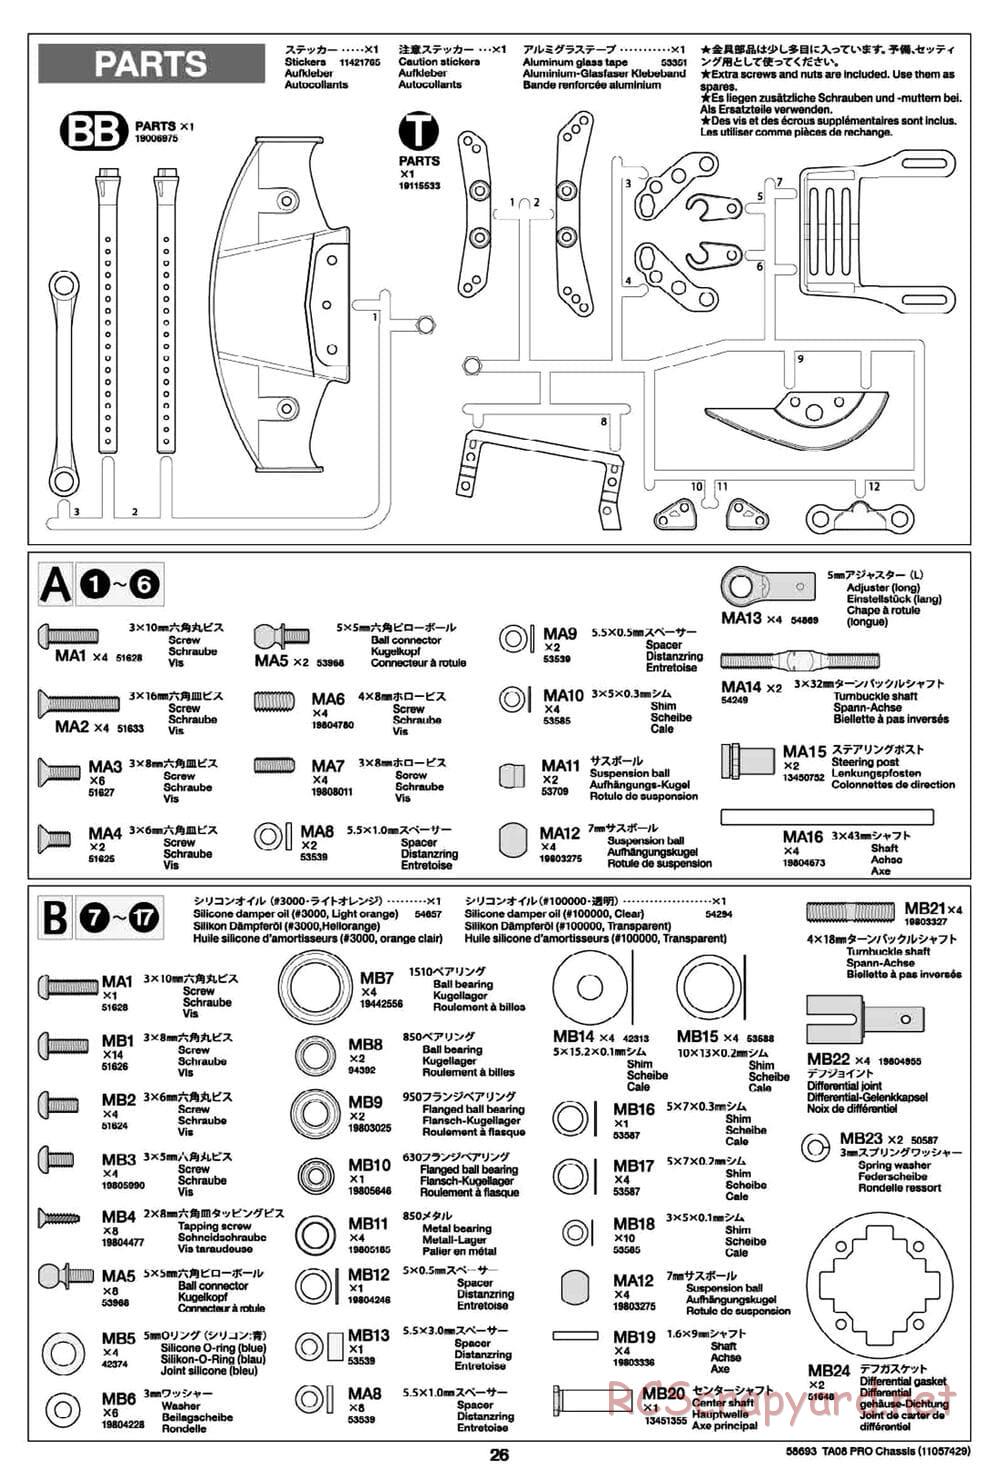 Tamiya - TA08 Pro Chassis - Manual - Page 26